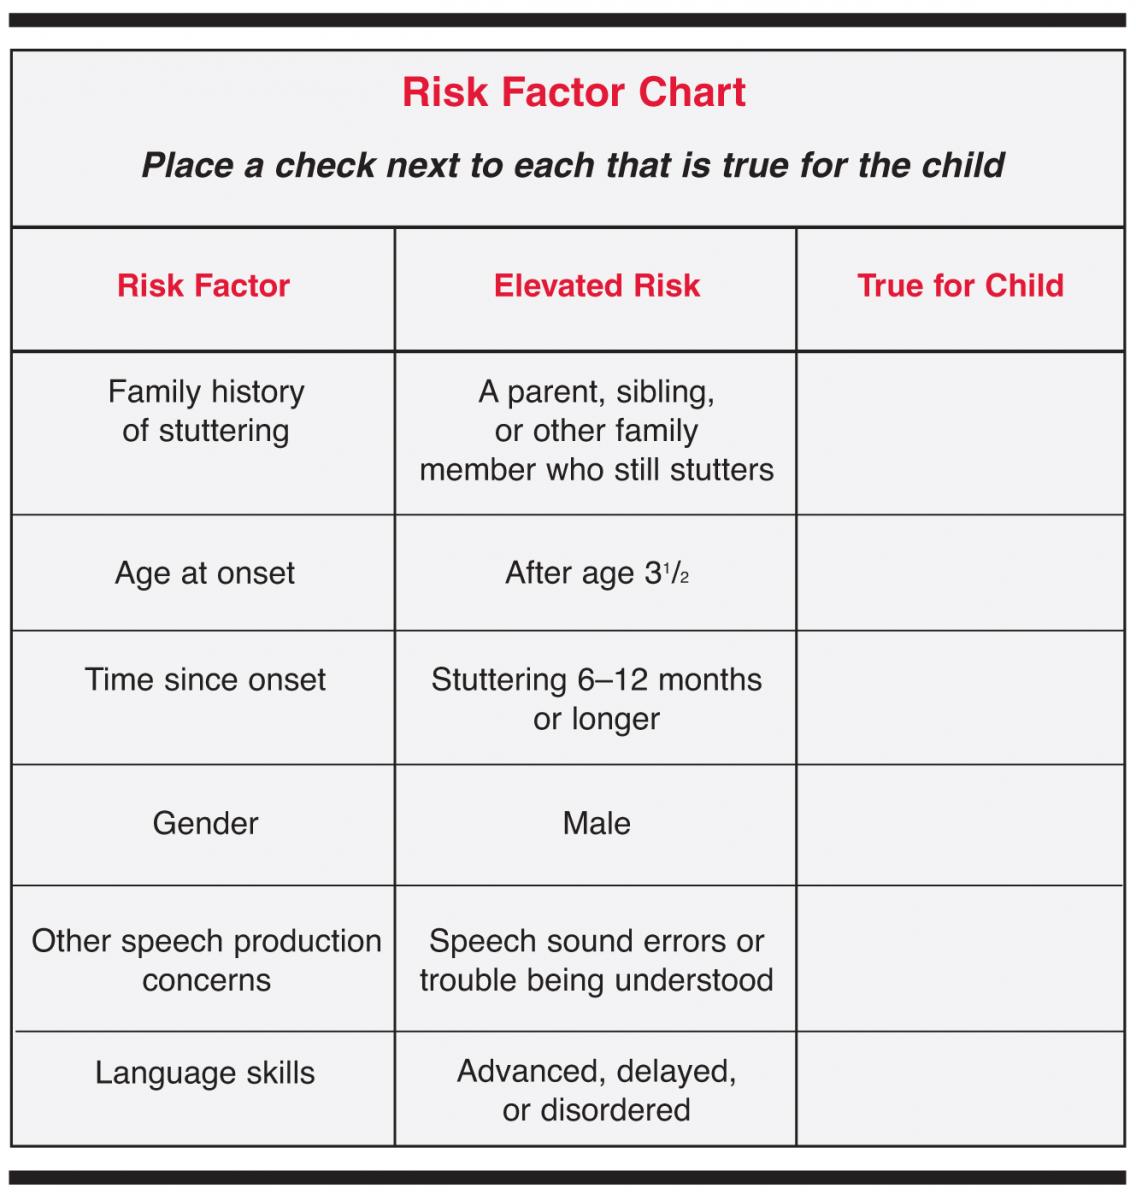 Некоторые факторы могут подвергать детей риску заикания